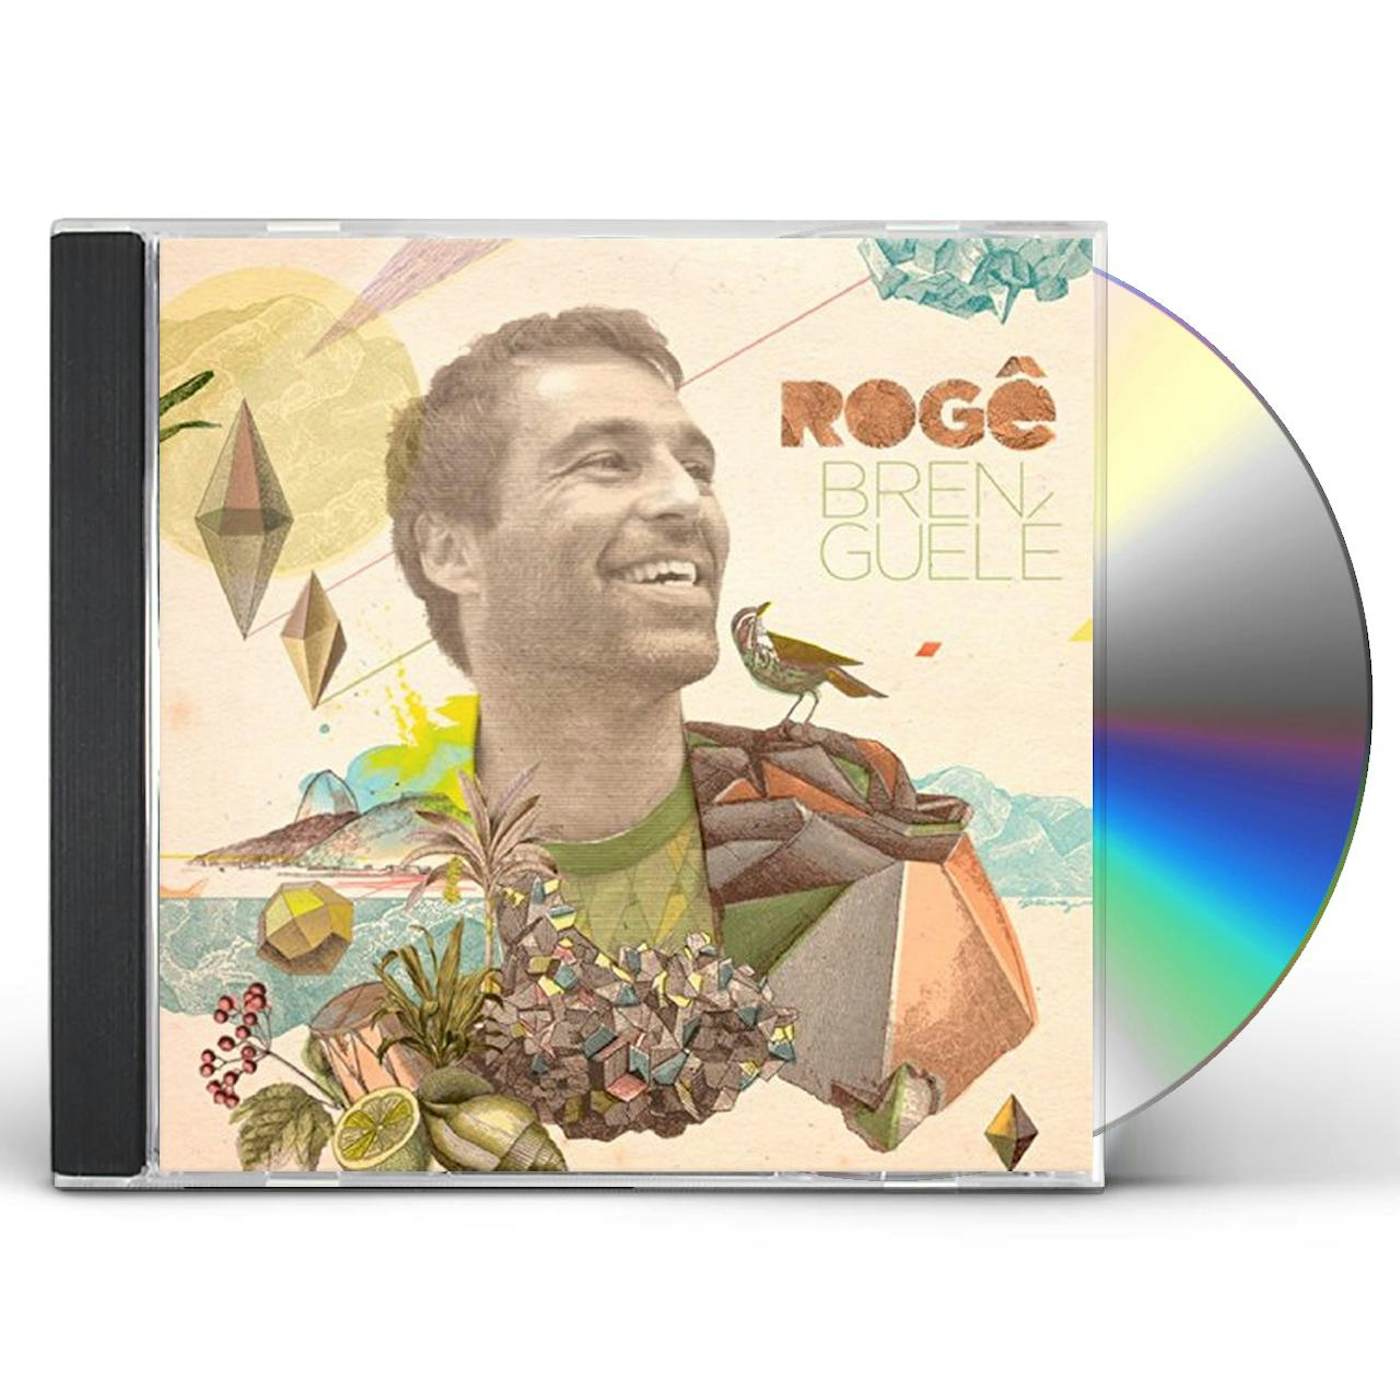 Rogê BRENGUELE CD